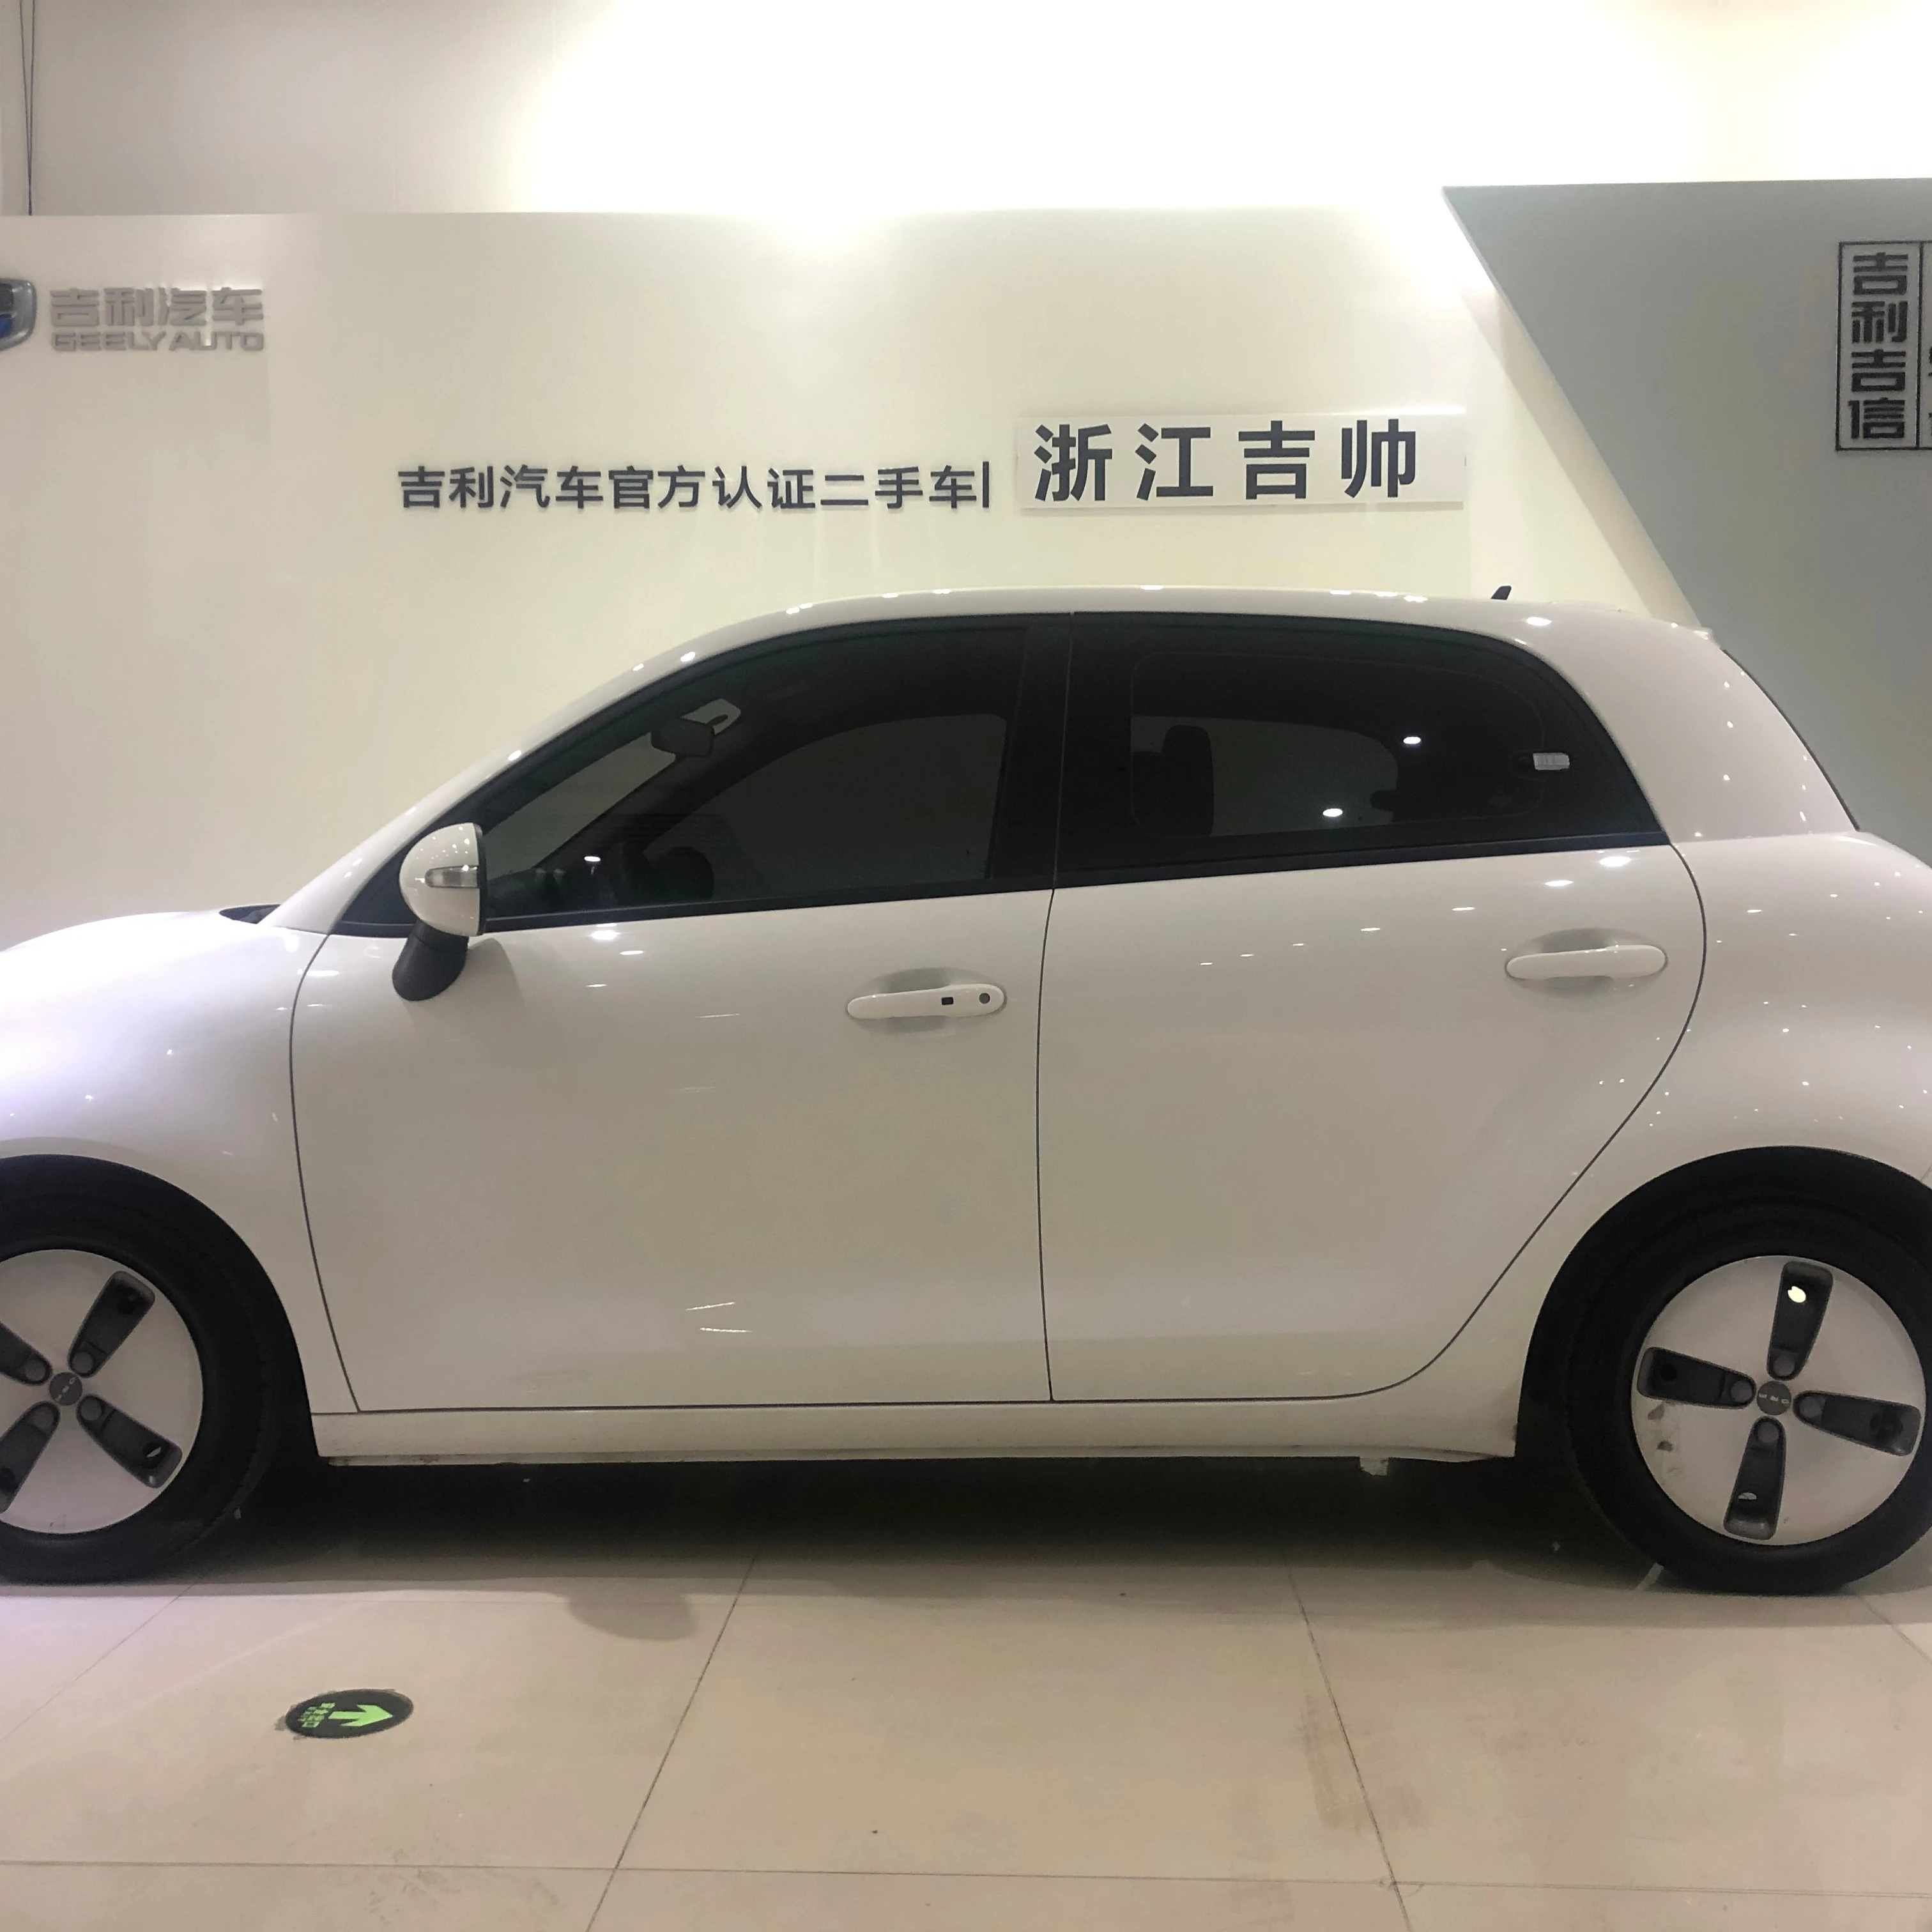 电动汽车长城ora R1 Nedc 310公里lhd批准的中国二手车出口商 Buy 电动汽车 Ora R1 二手车product On Alibaba Com